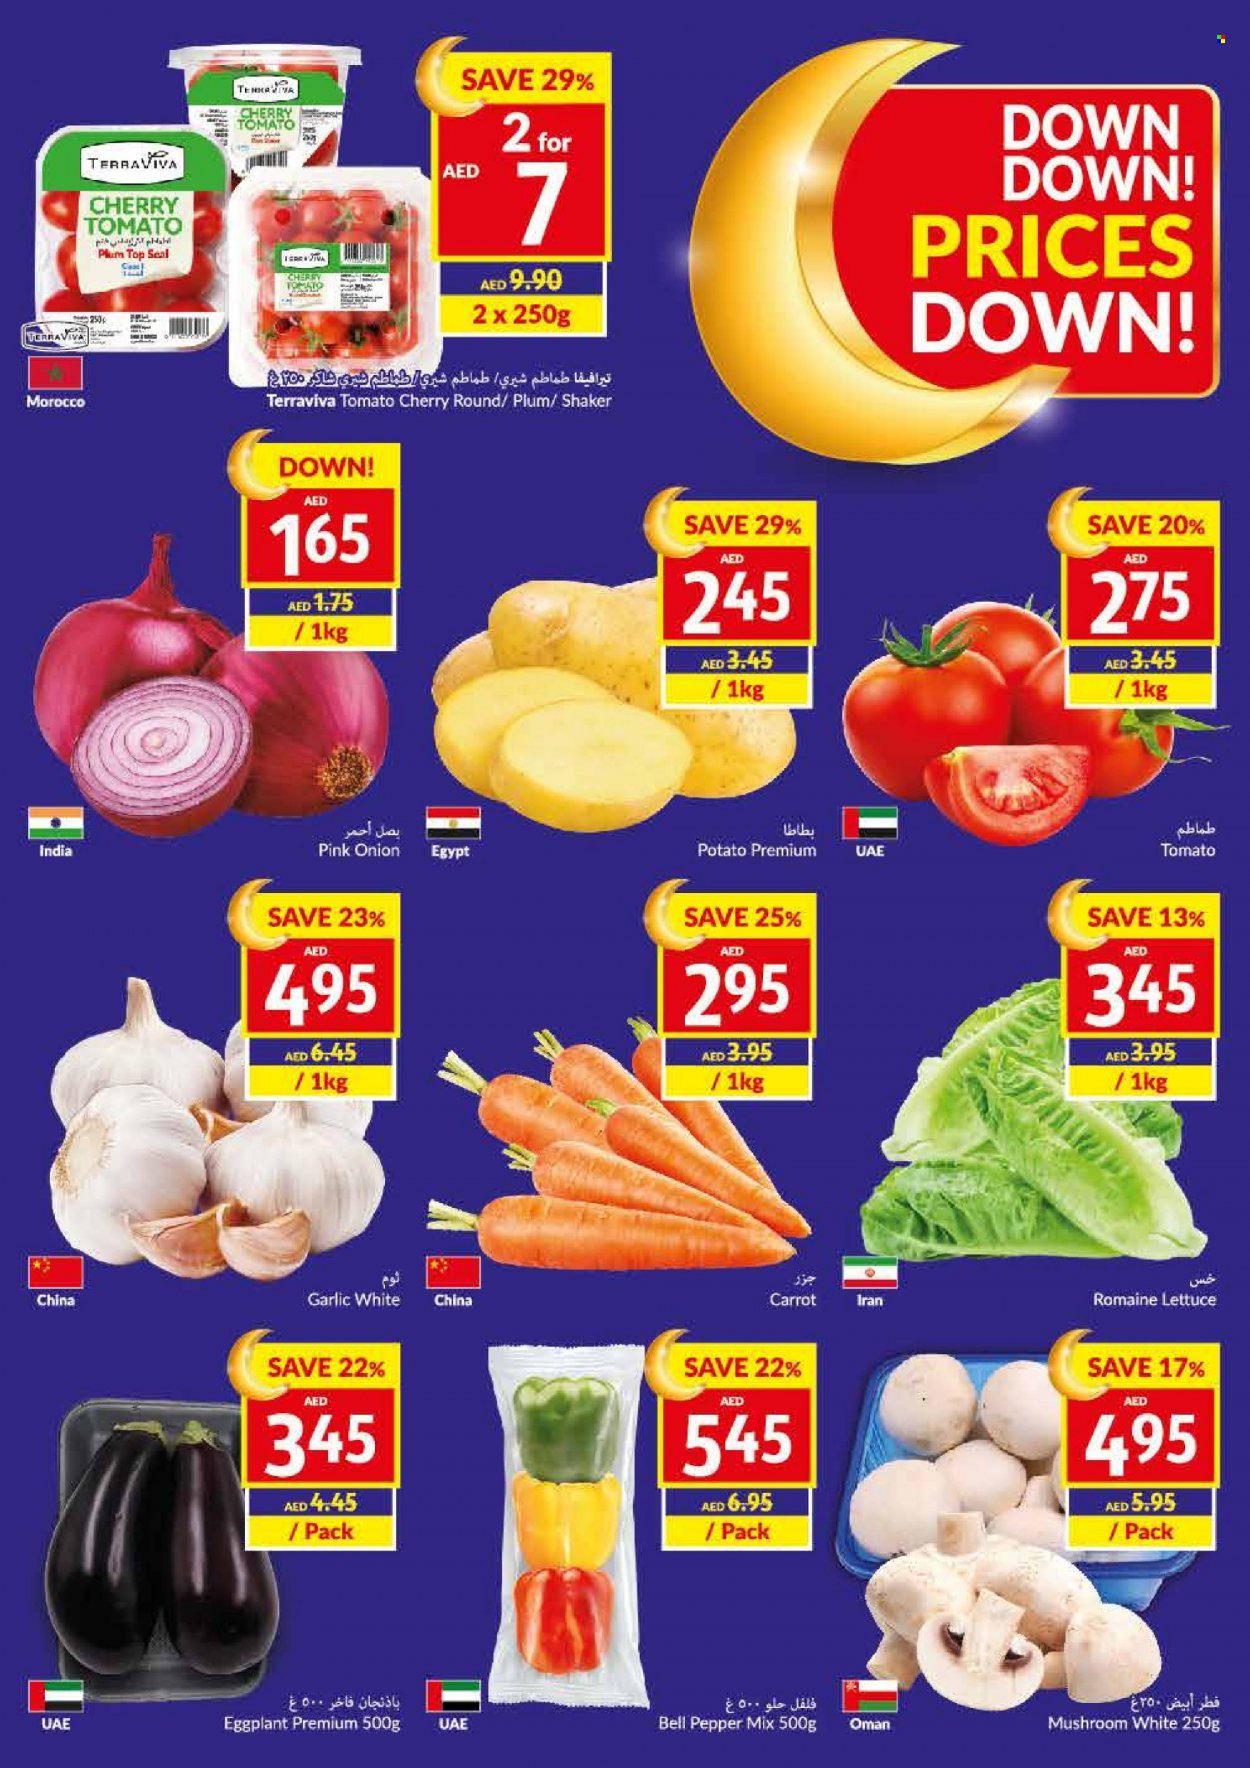 VIVA Supermarket offer - 22/03/2023 - 28/03/2023.